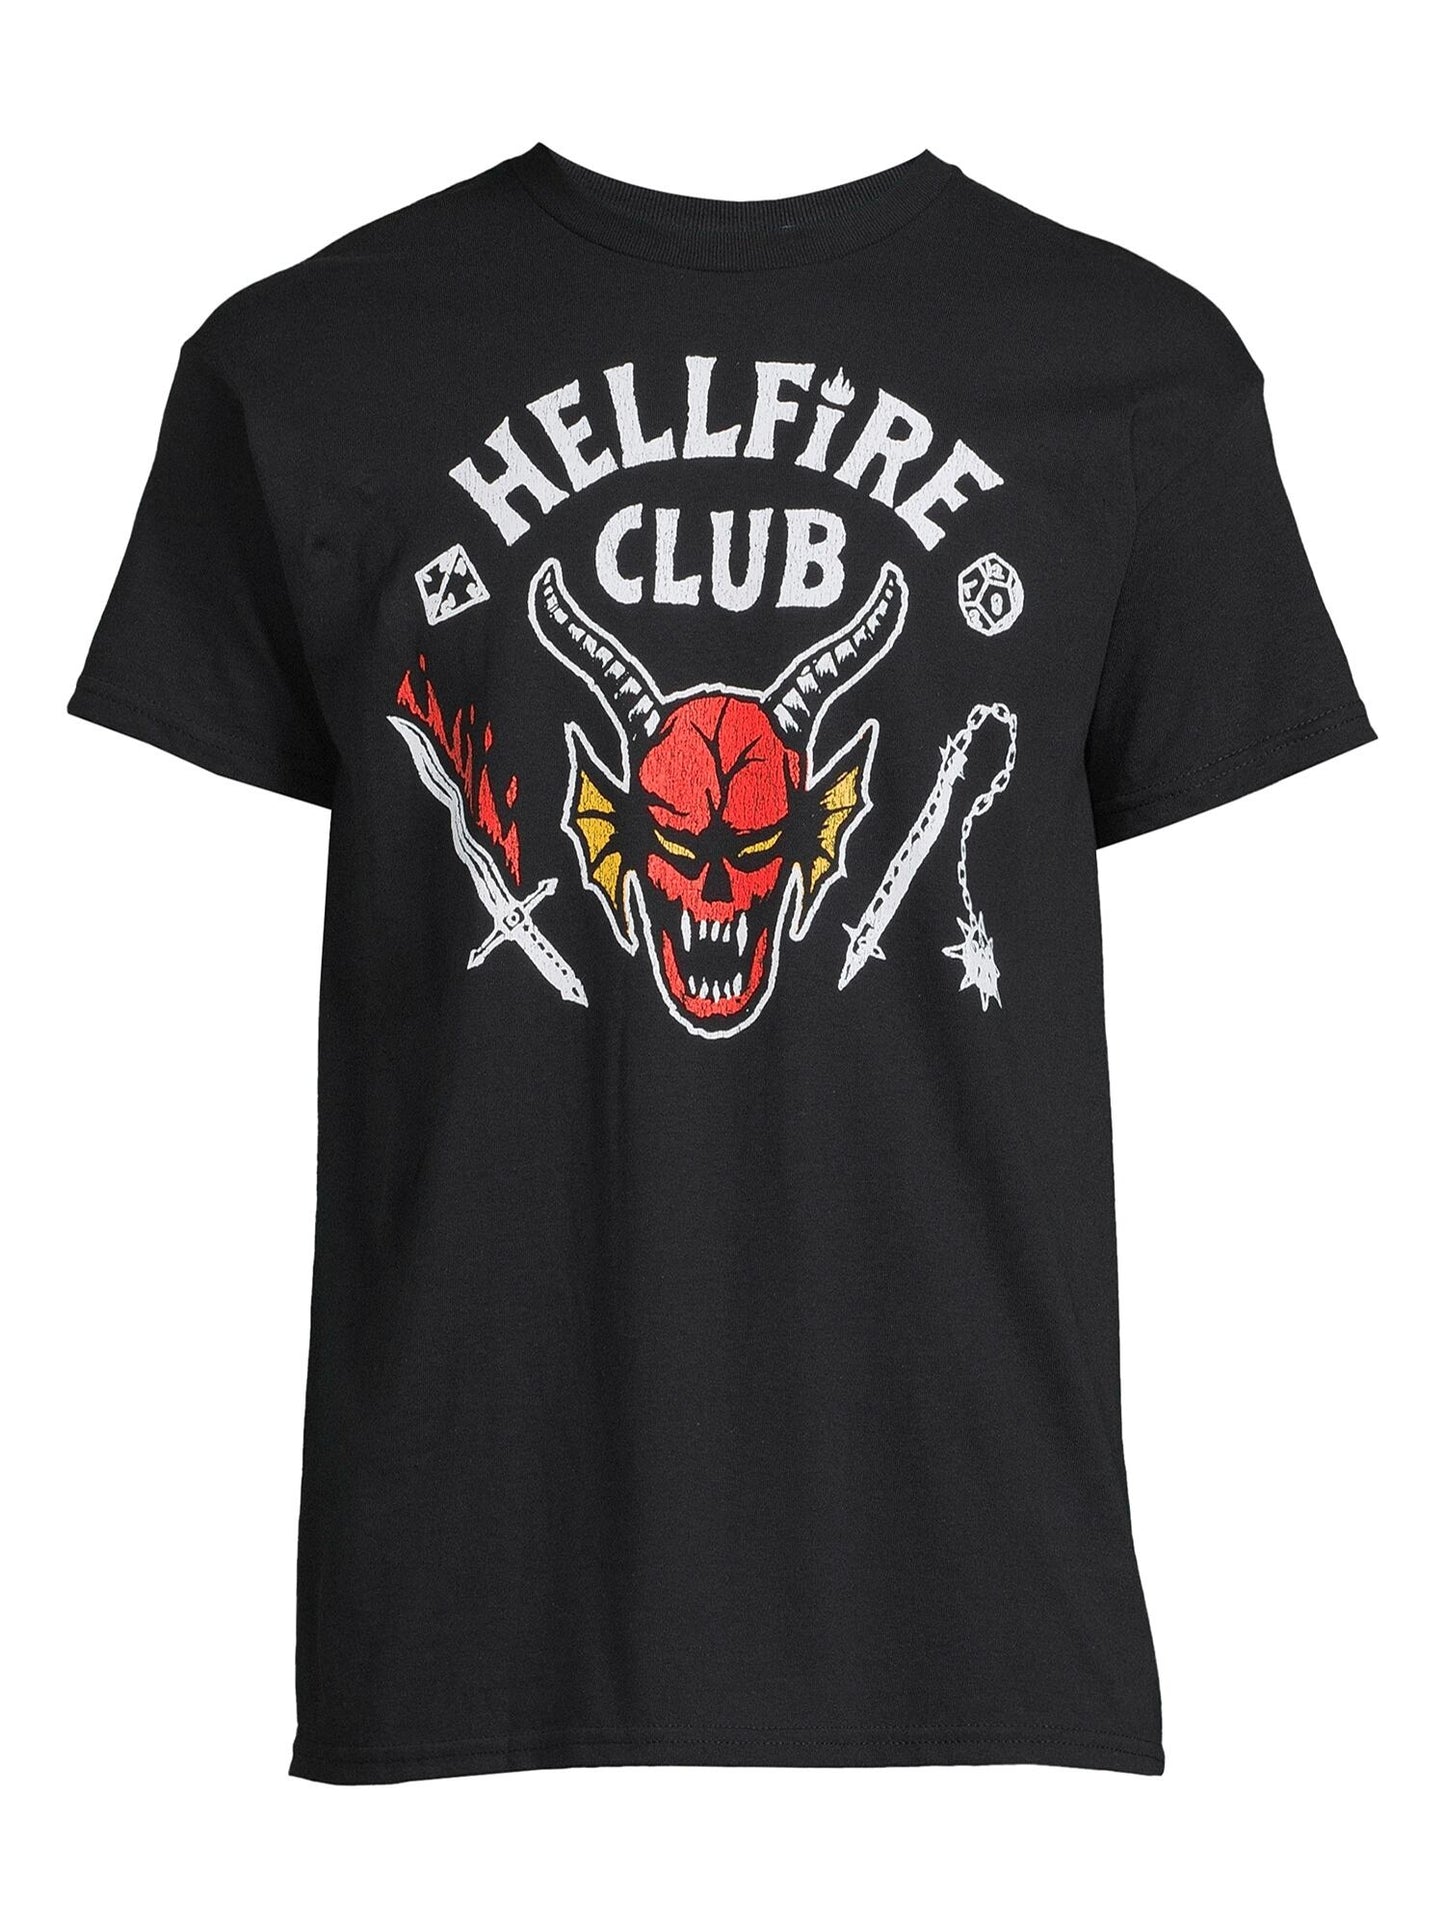 ストレンジャー・シングス Tシャツ Stranger Things Hellfire Club, Men's Graphic Crew Neck Short Sleeves T-Shirt